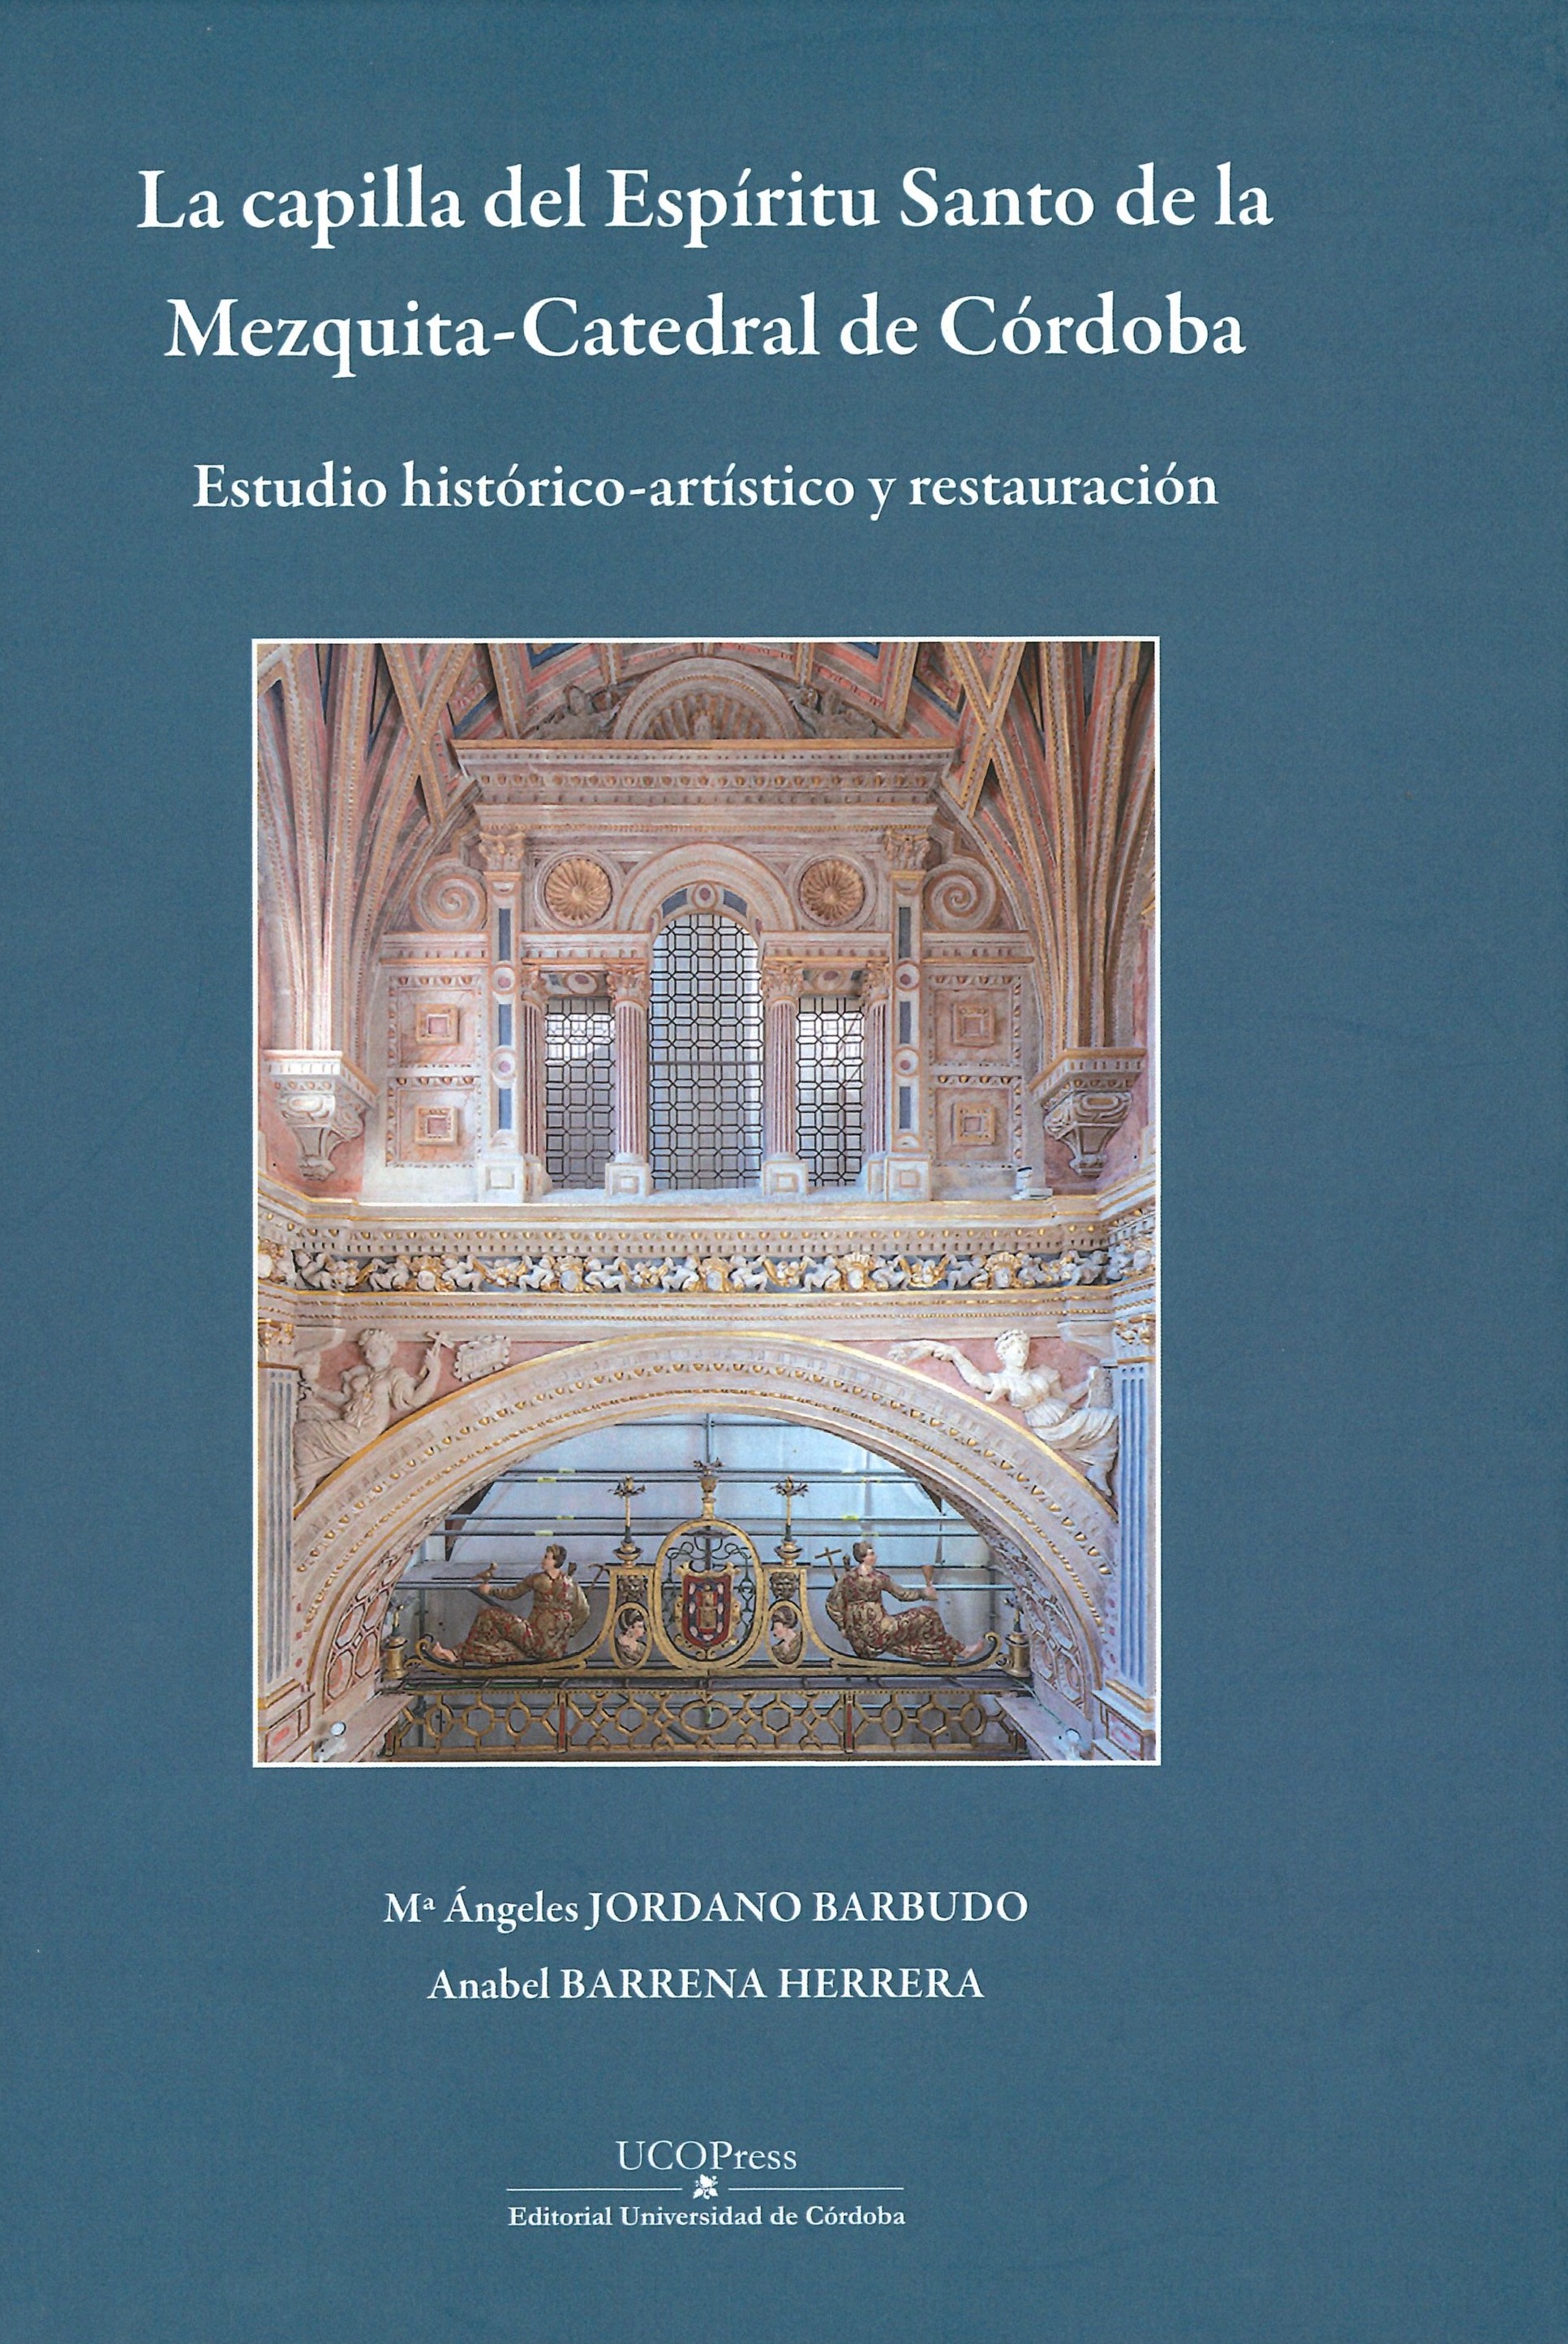 Imagen de portada del libro La capilla del Espíritu Santo de la mezquita catedral de Córdoba